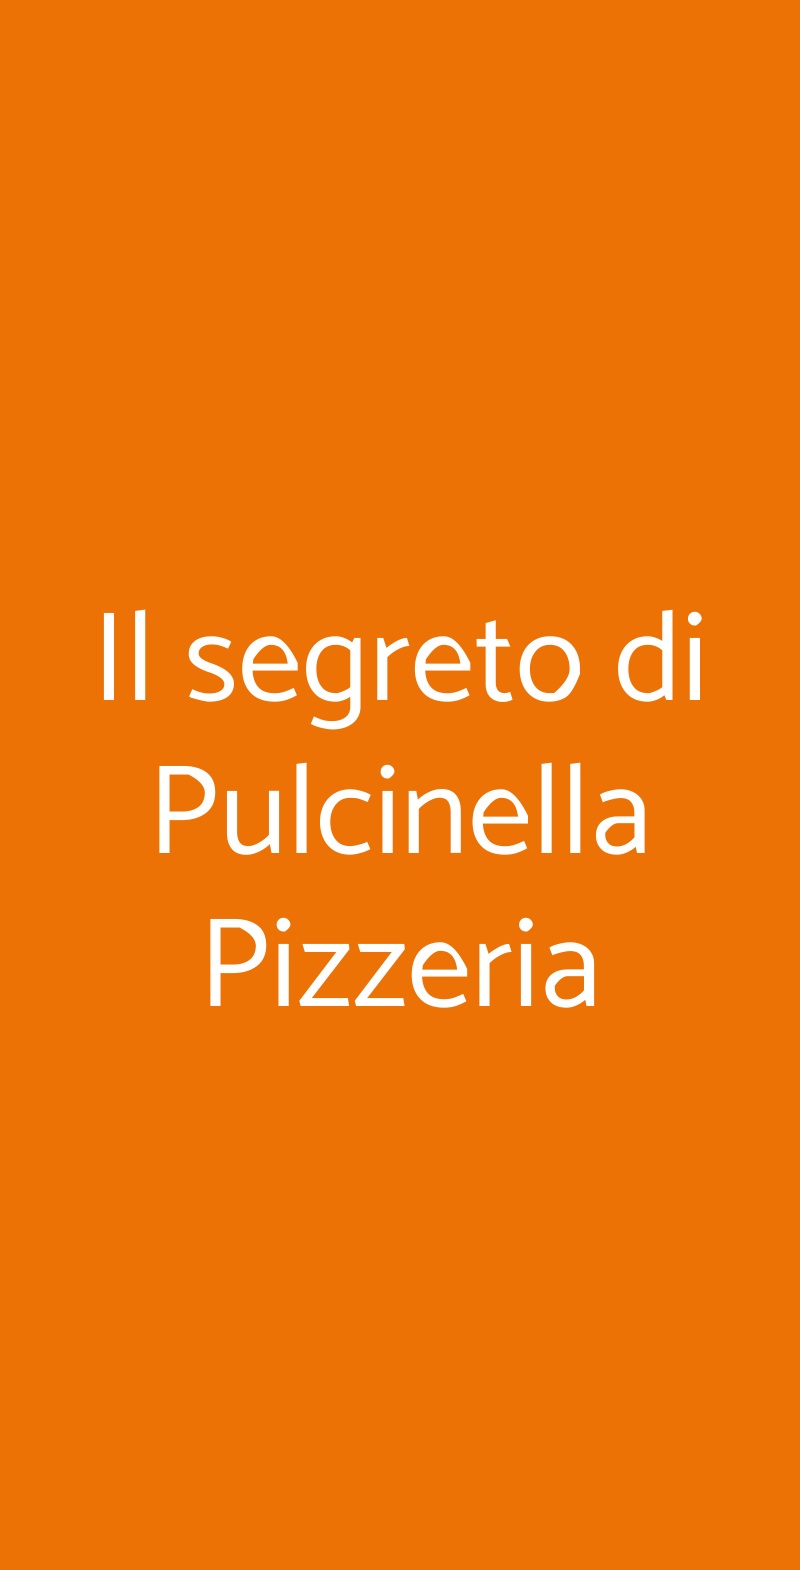 Il segreto di Pulcinella Pizzeria Civitanova Marche menù 1 pagina